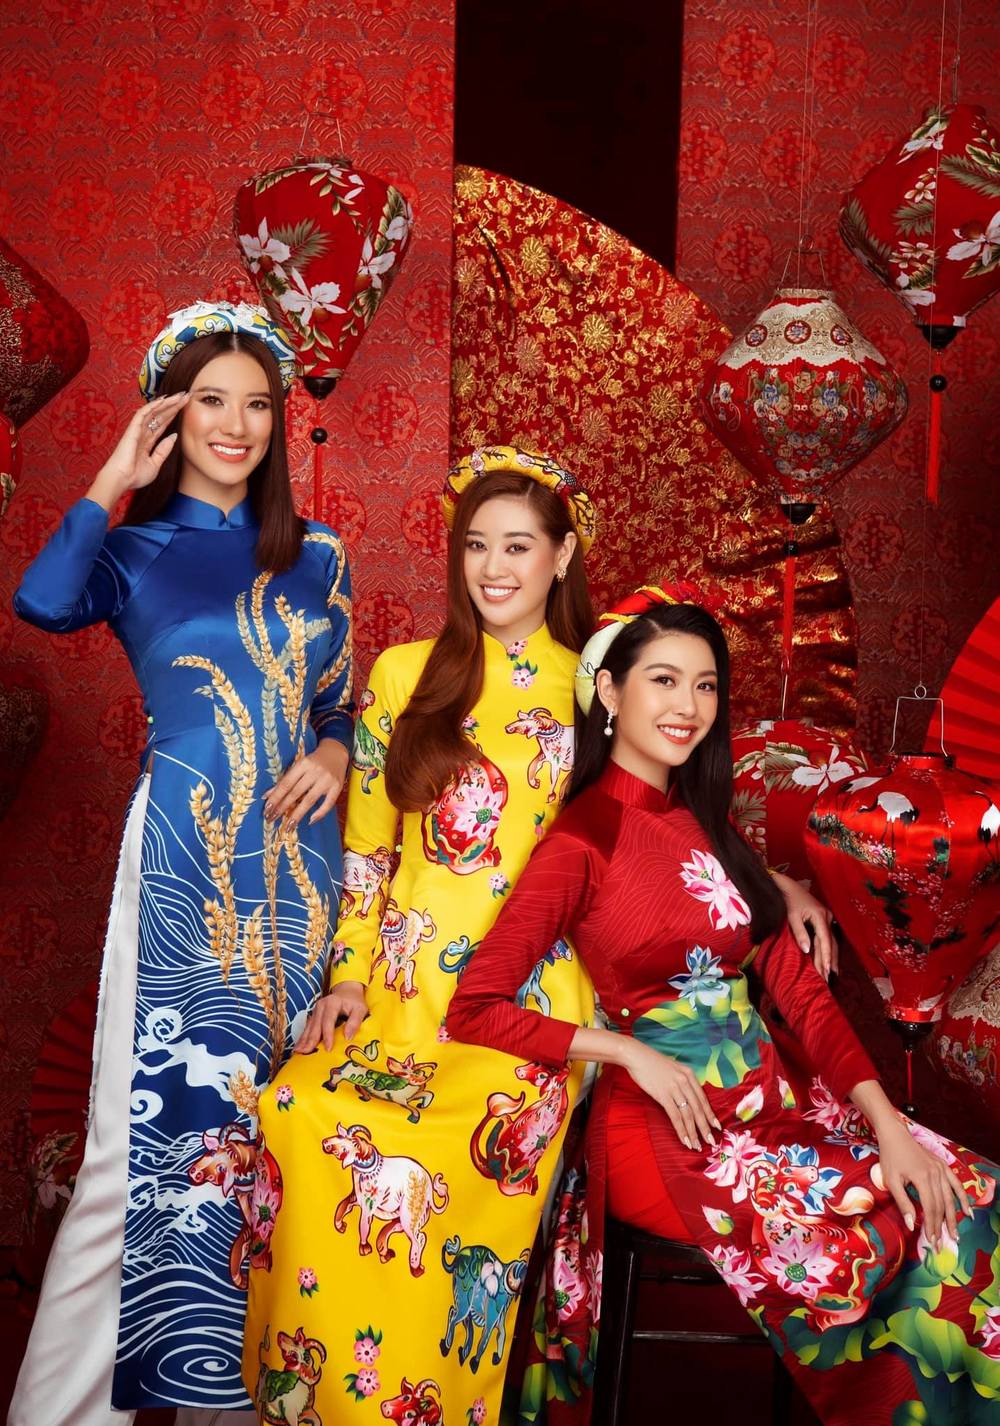  
Các người đẹp Hoa hậu Hoàn vũ Việt Nam rạng ngời trong bộ ảnh Tết Tân Sửu 2021 (Ảnh: NVCC).